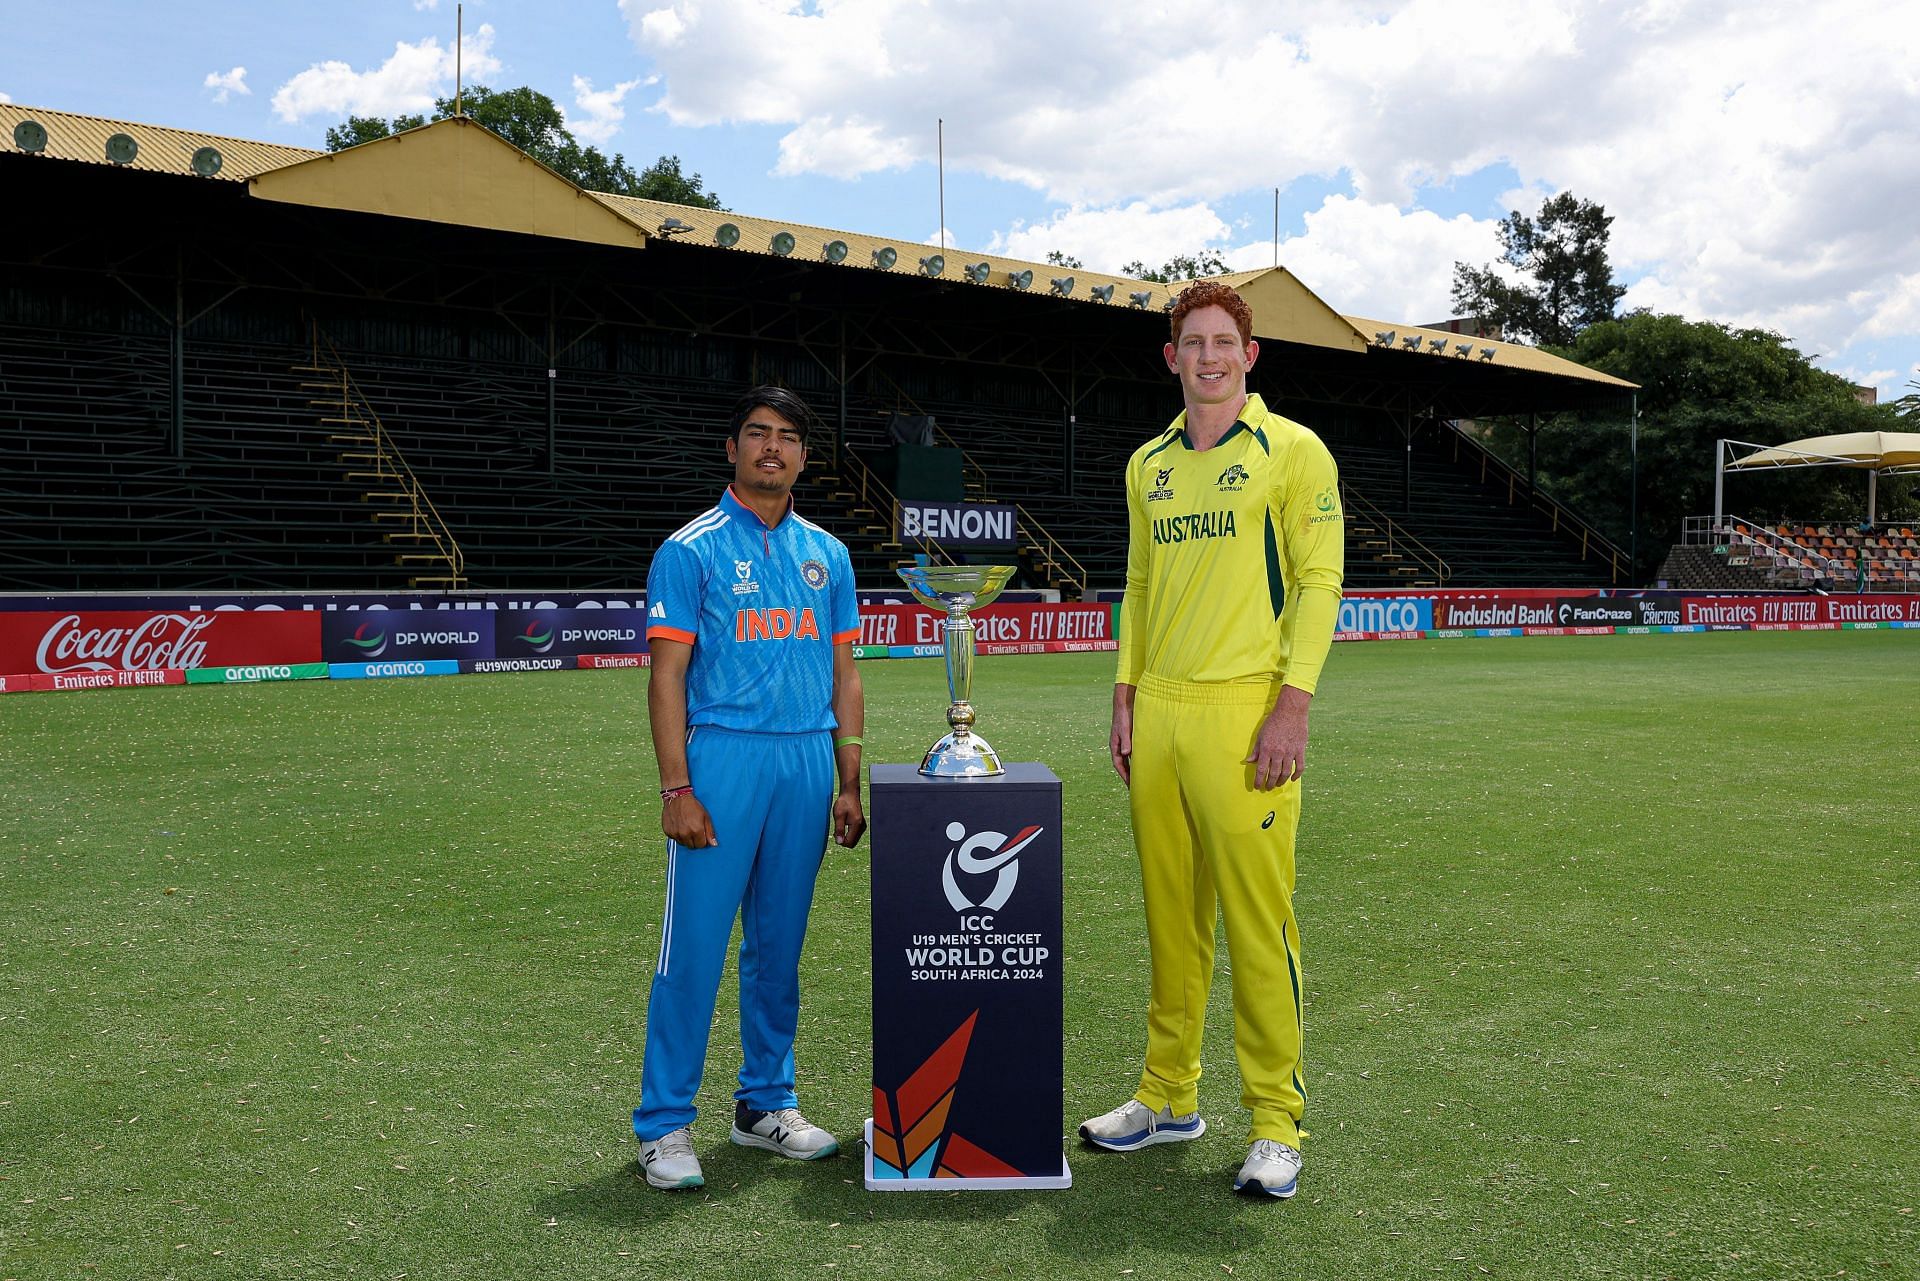 भारत और ऑस्ट्रेलिया के बीच होगा फाइनल (Photo Credit - BCCI)